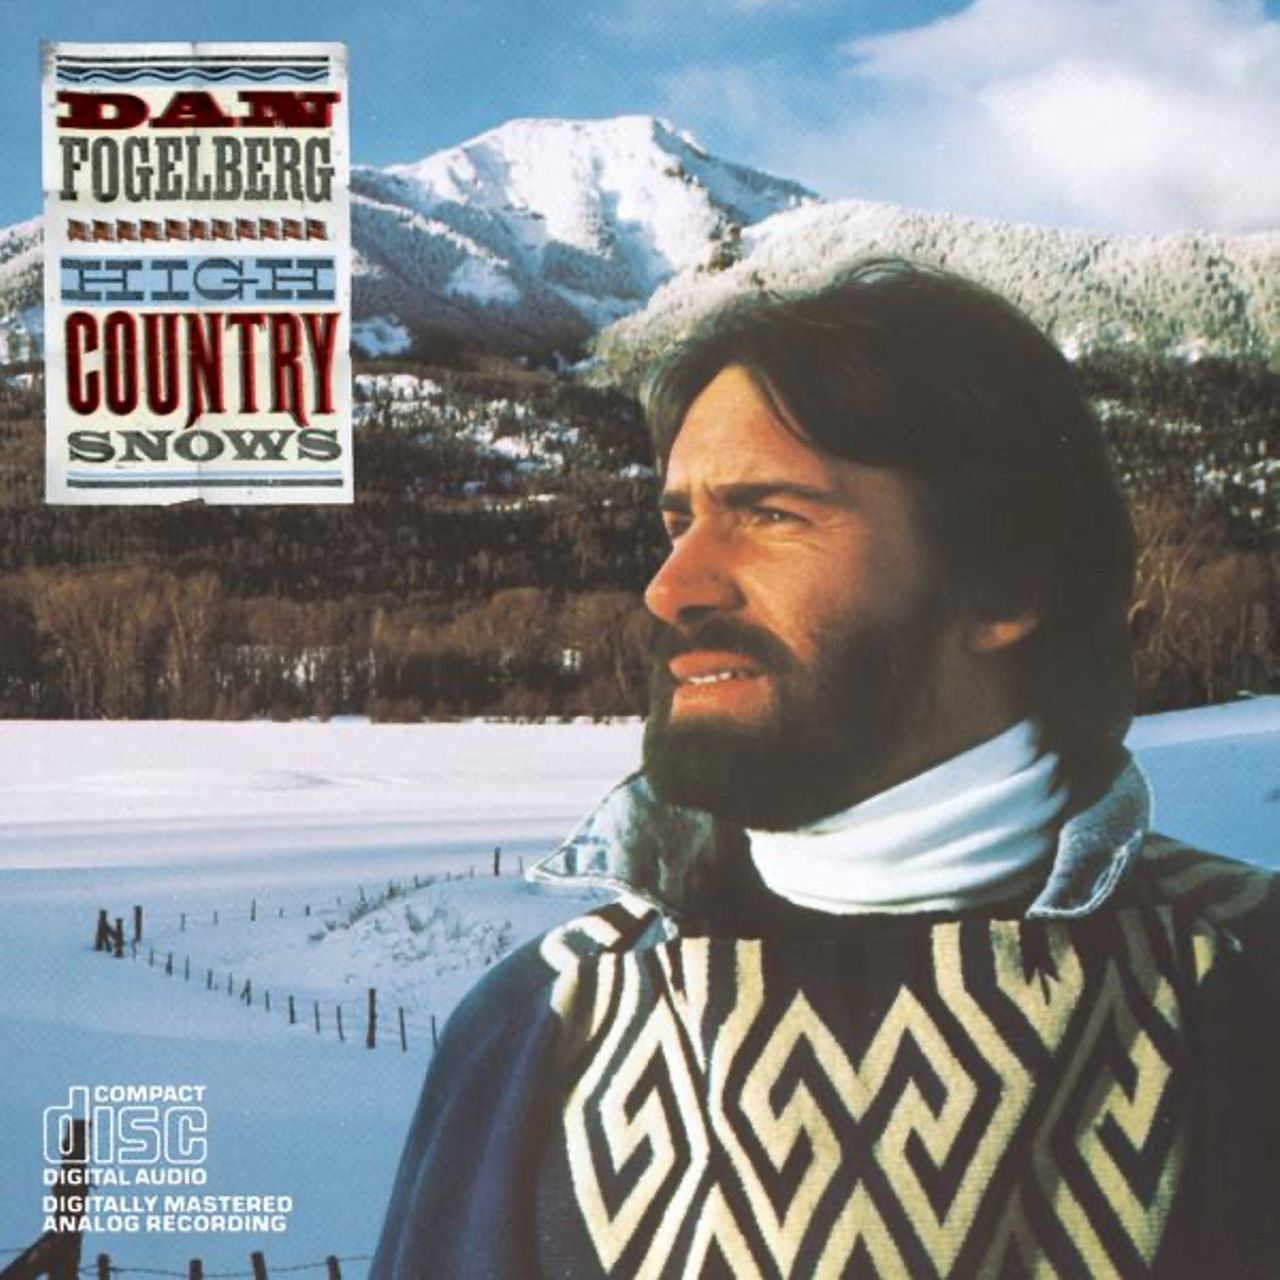 Dan Fogelberg - High Country Snows cover album